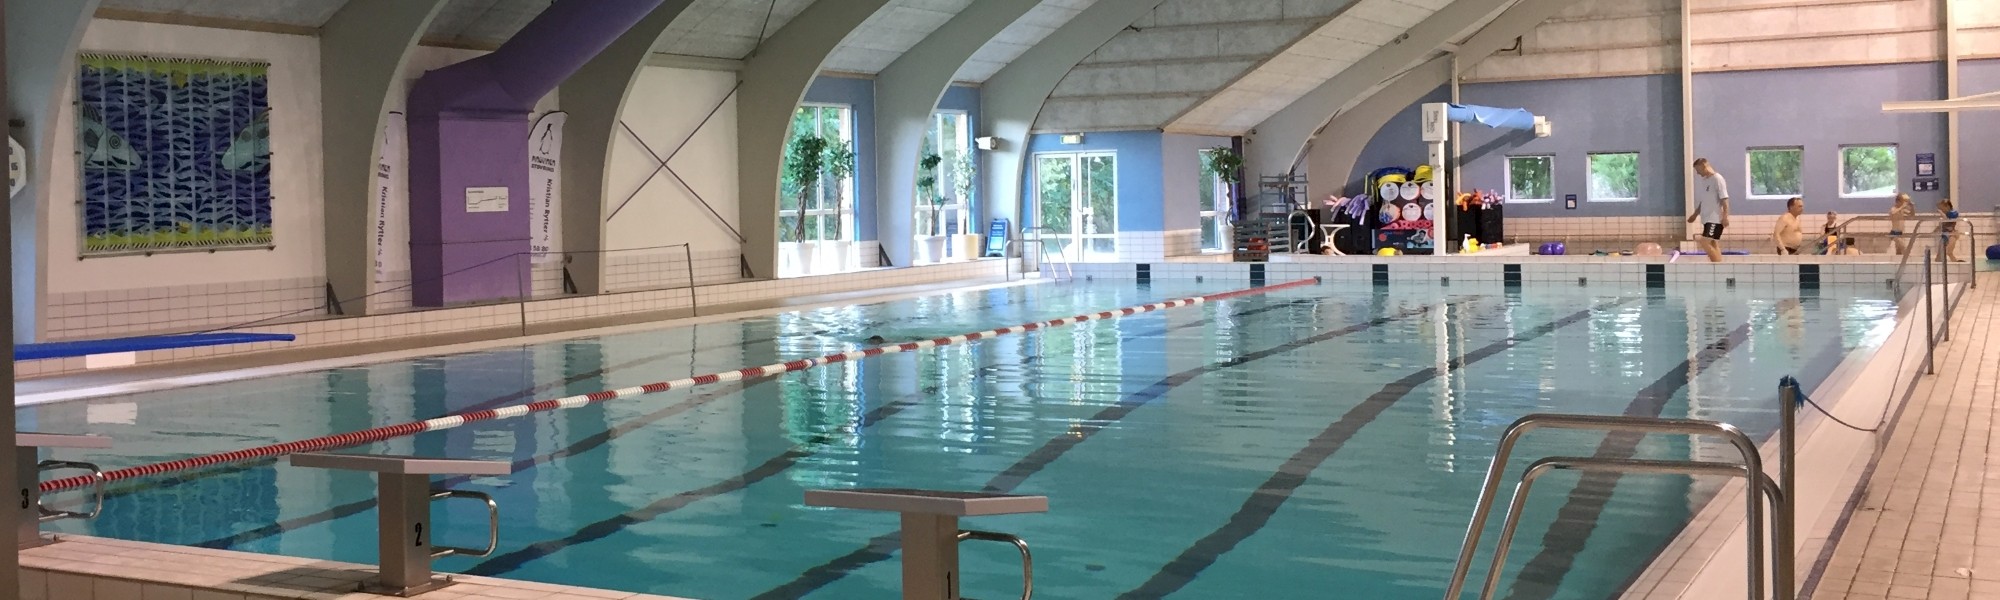 Svømmehal med plads til motion, leg og velvære